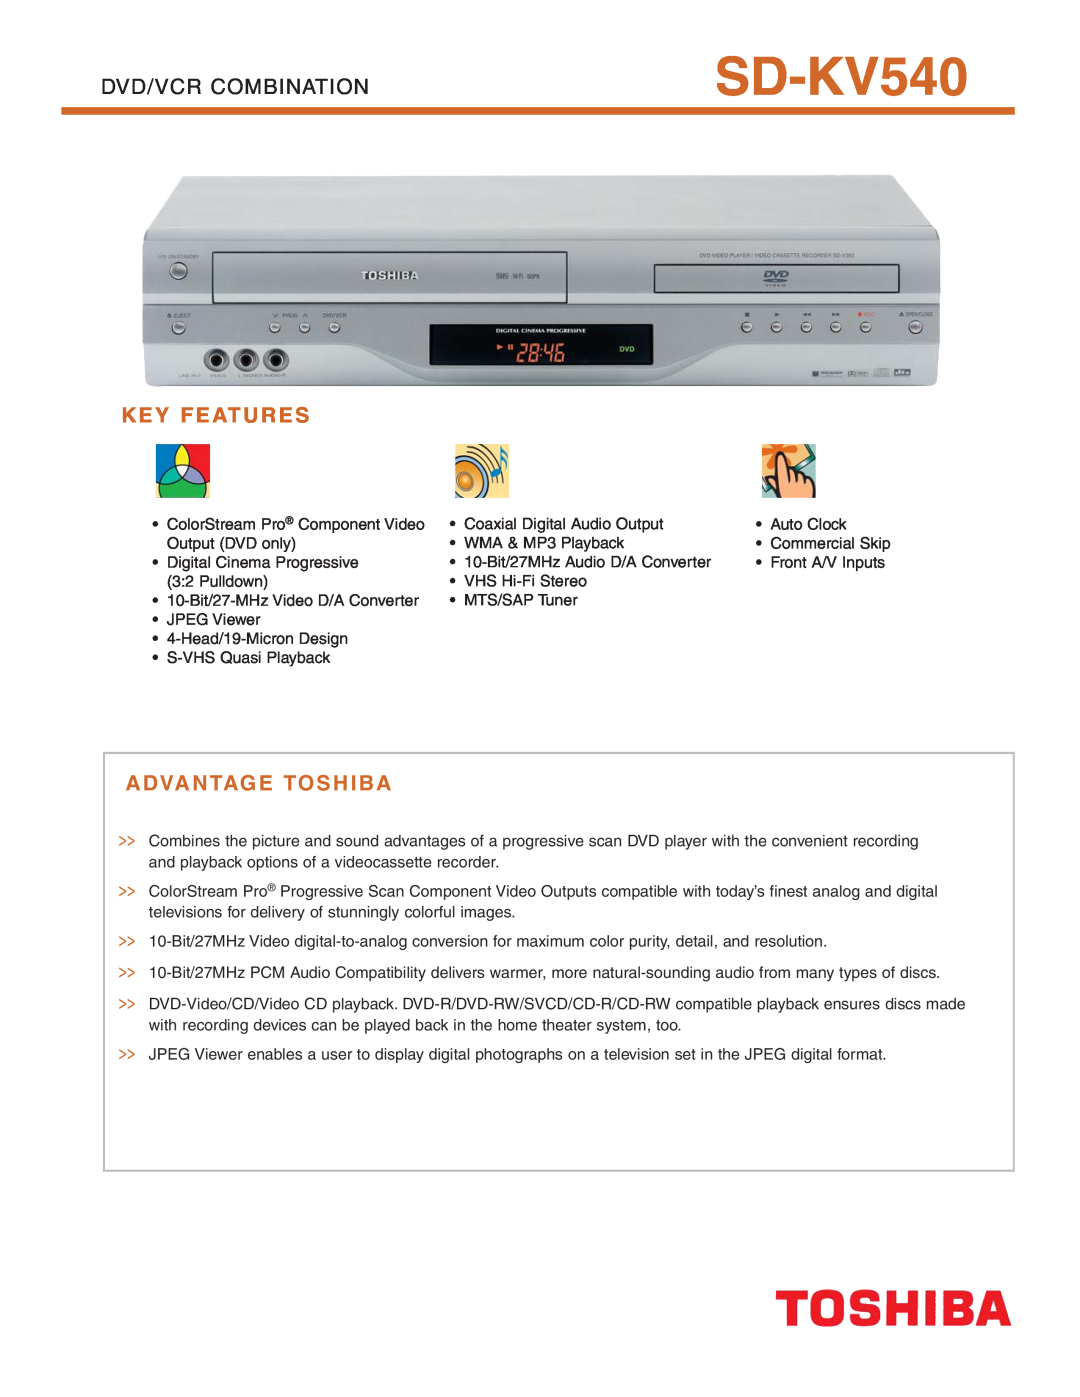 Toshiba SD-KV540 manual Key Features, Advantage Toshiba, Dvd/Vcr Combination 